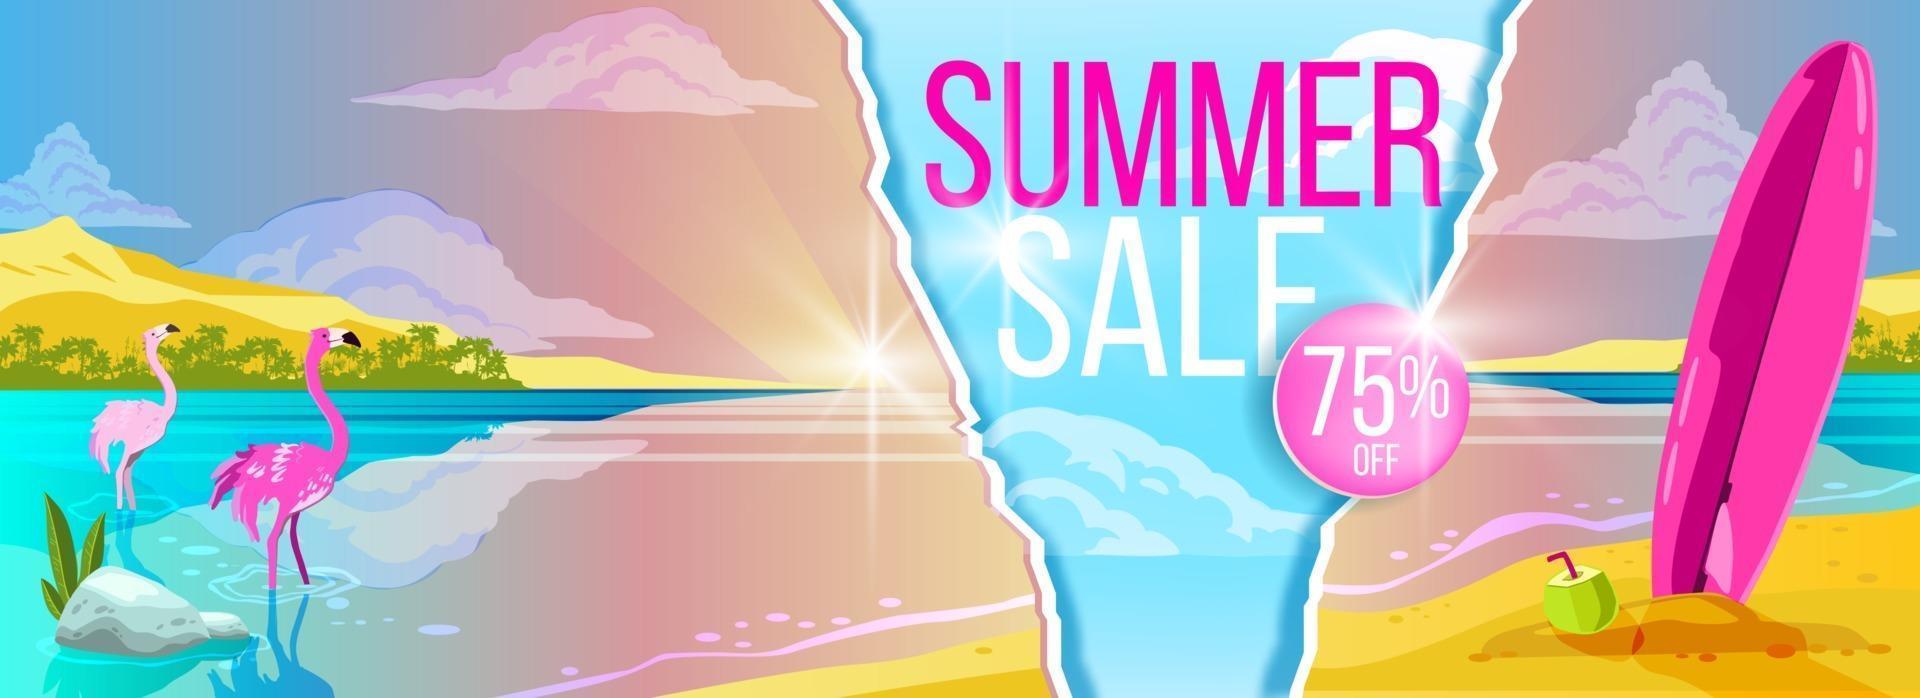 banner de venta de verano, playa tropical, flamenco rosado, tabla de surf, fondo de paraíso exótico vector